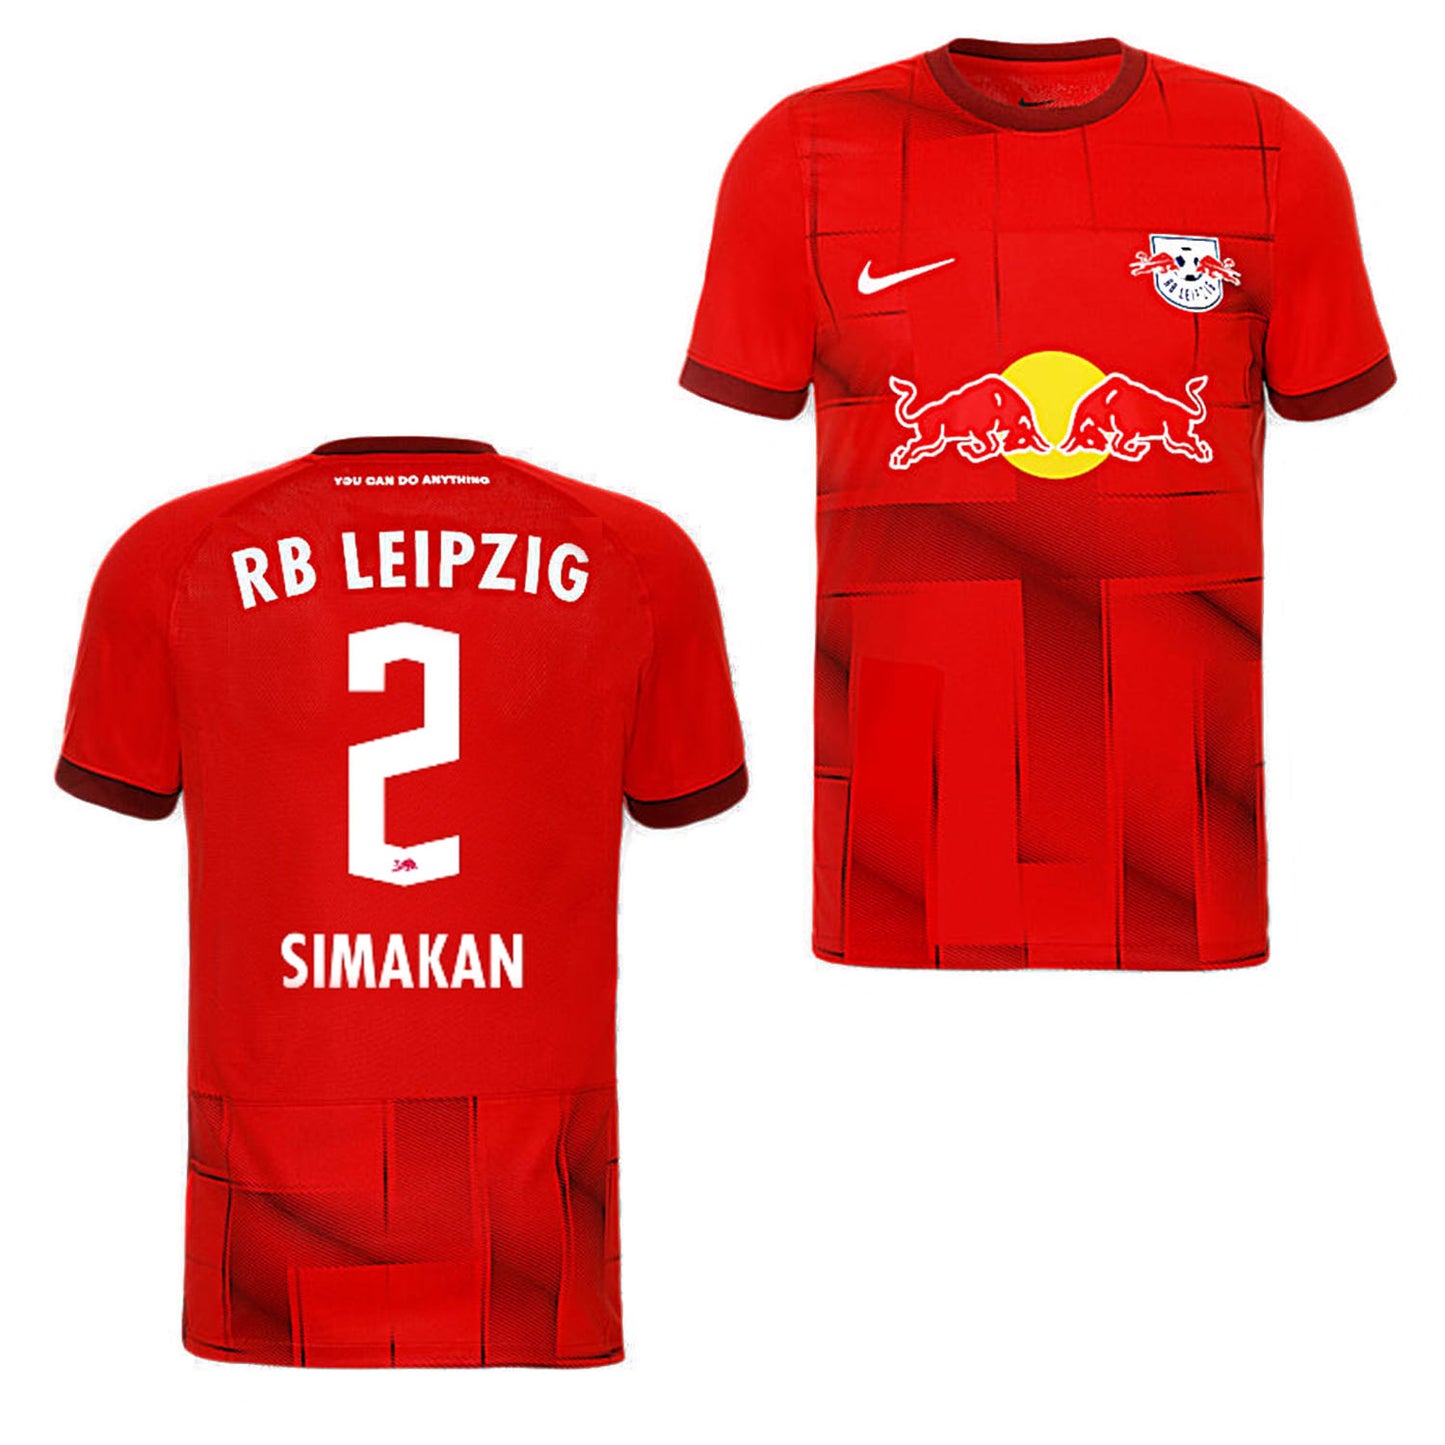 Mohamed Simakan RB Leipzig 2 Jersey